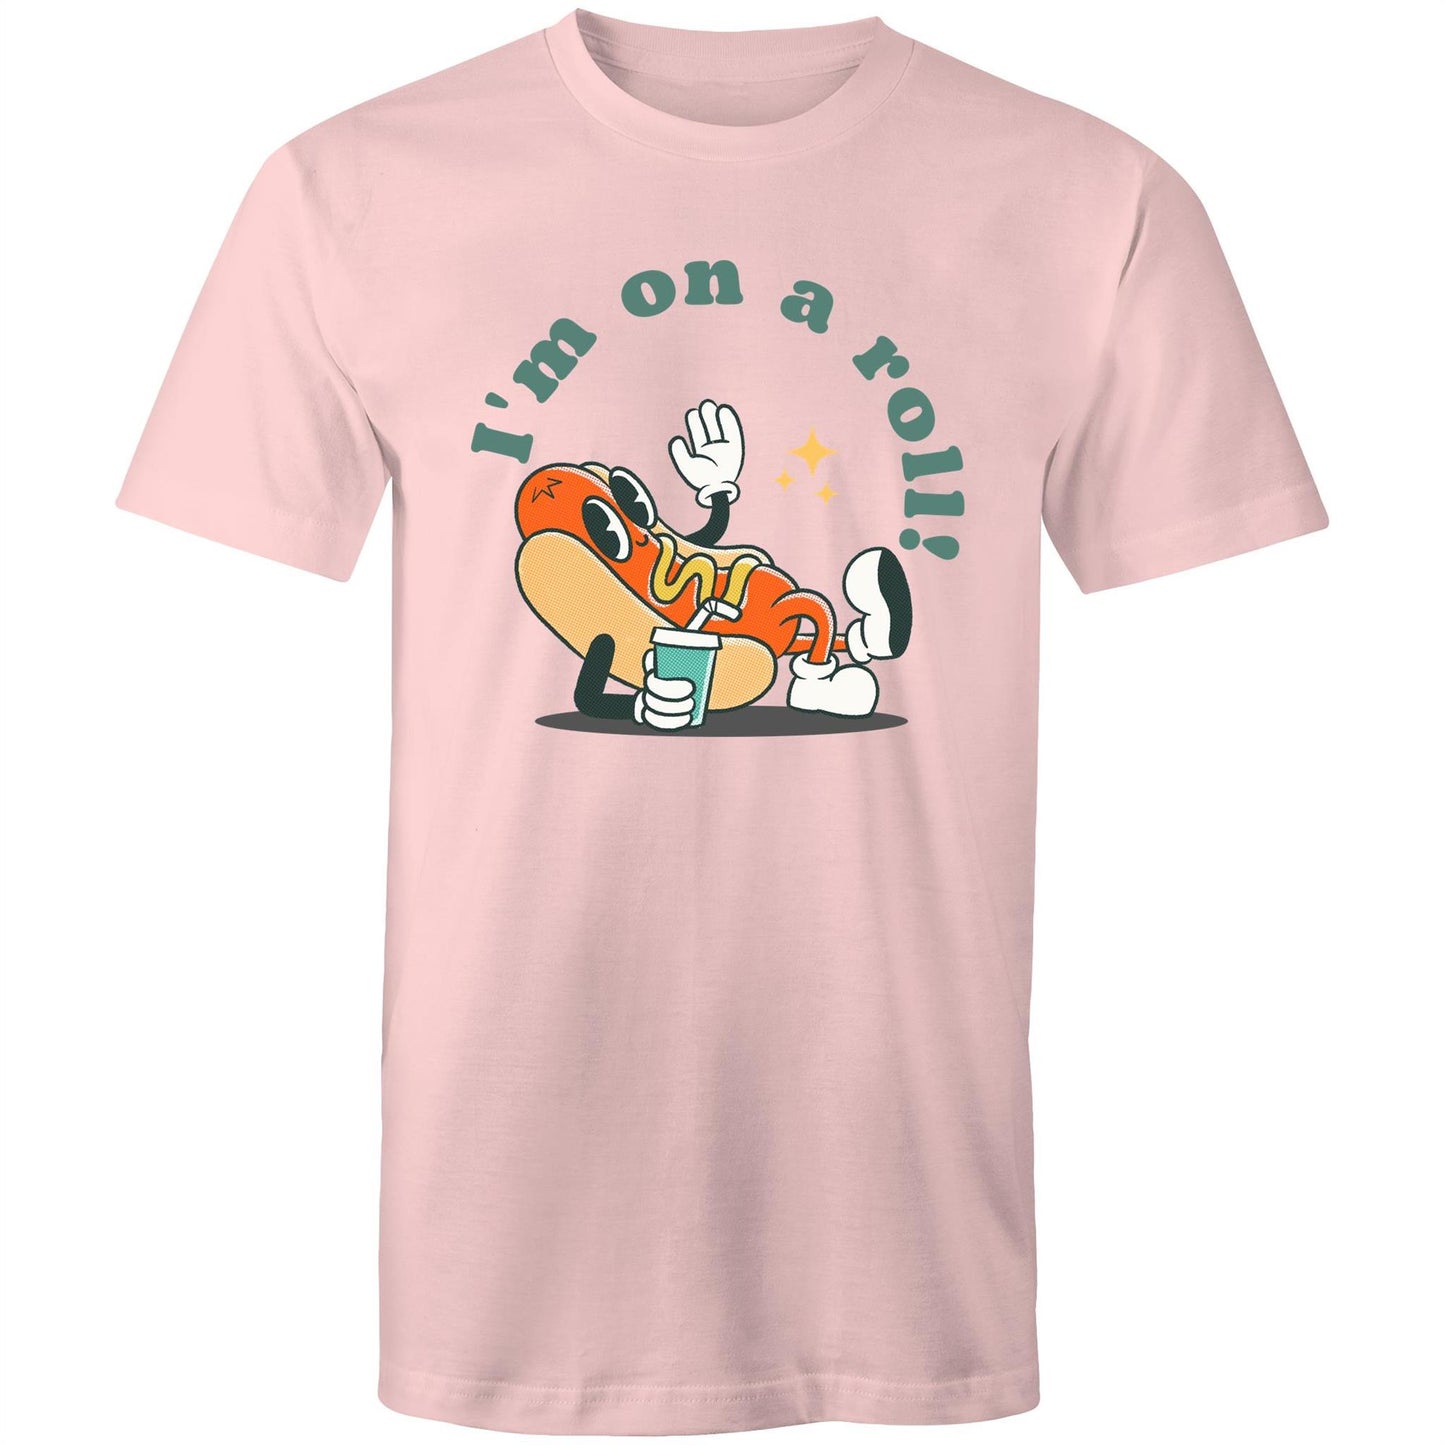 Hot Dog, I'm On A Roll - Mens T-Shirt Pink Mens T-shirt Food